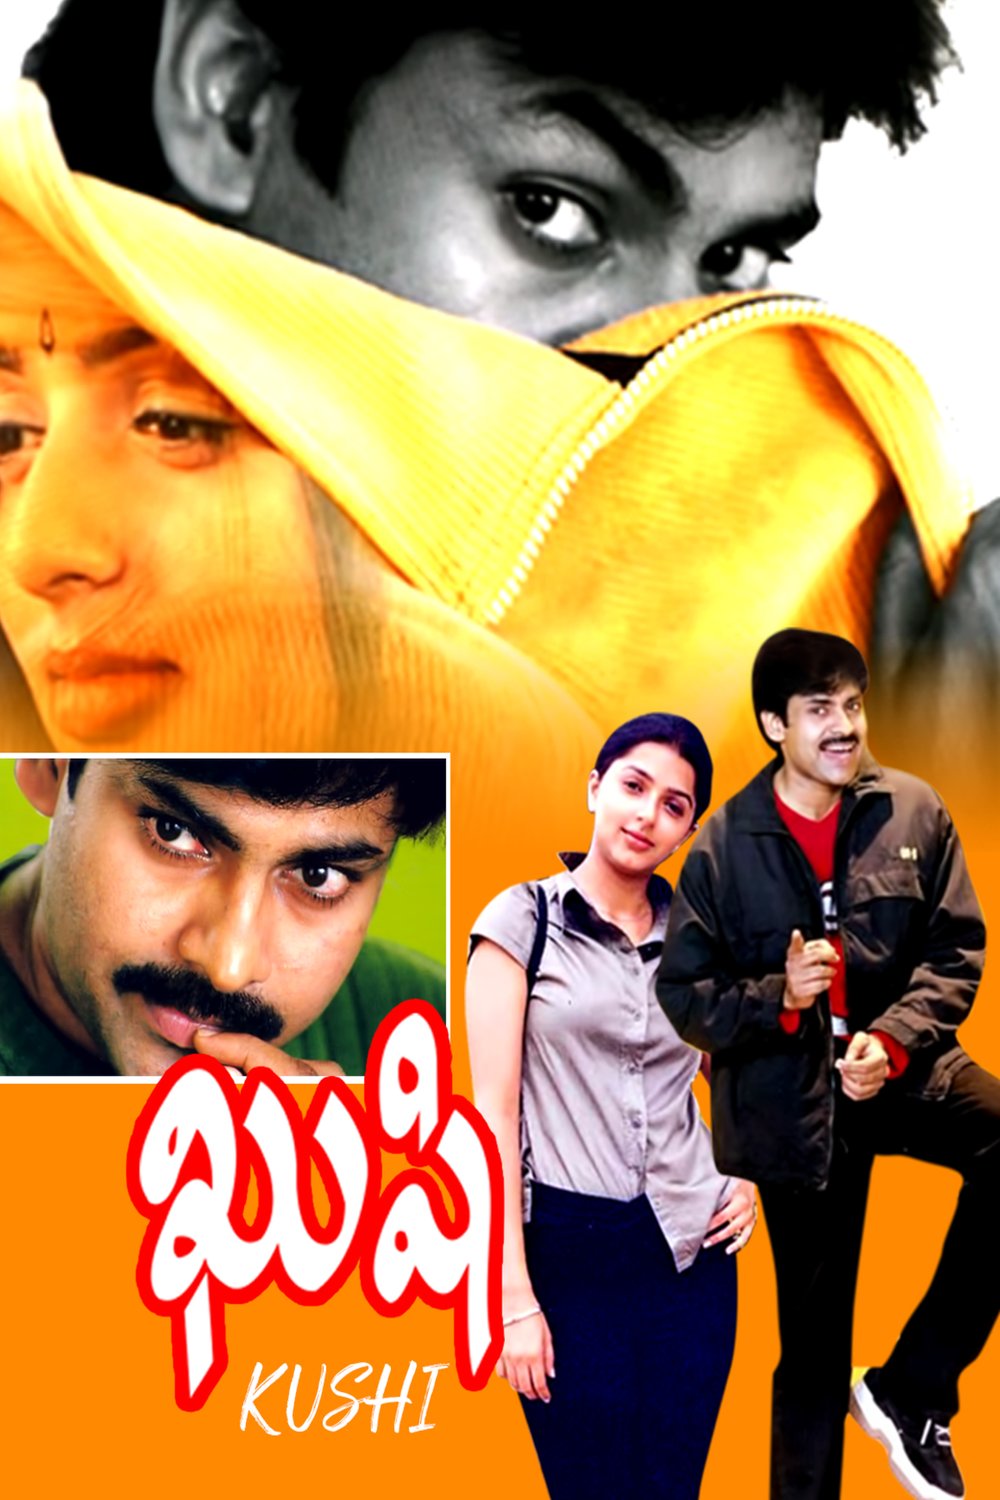 Telugu poster of the movie Khushi